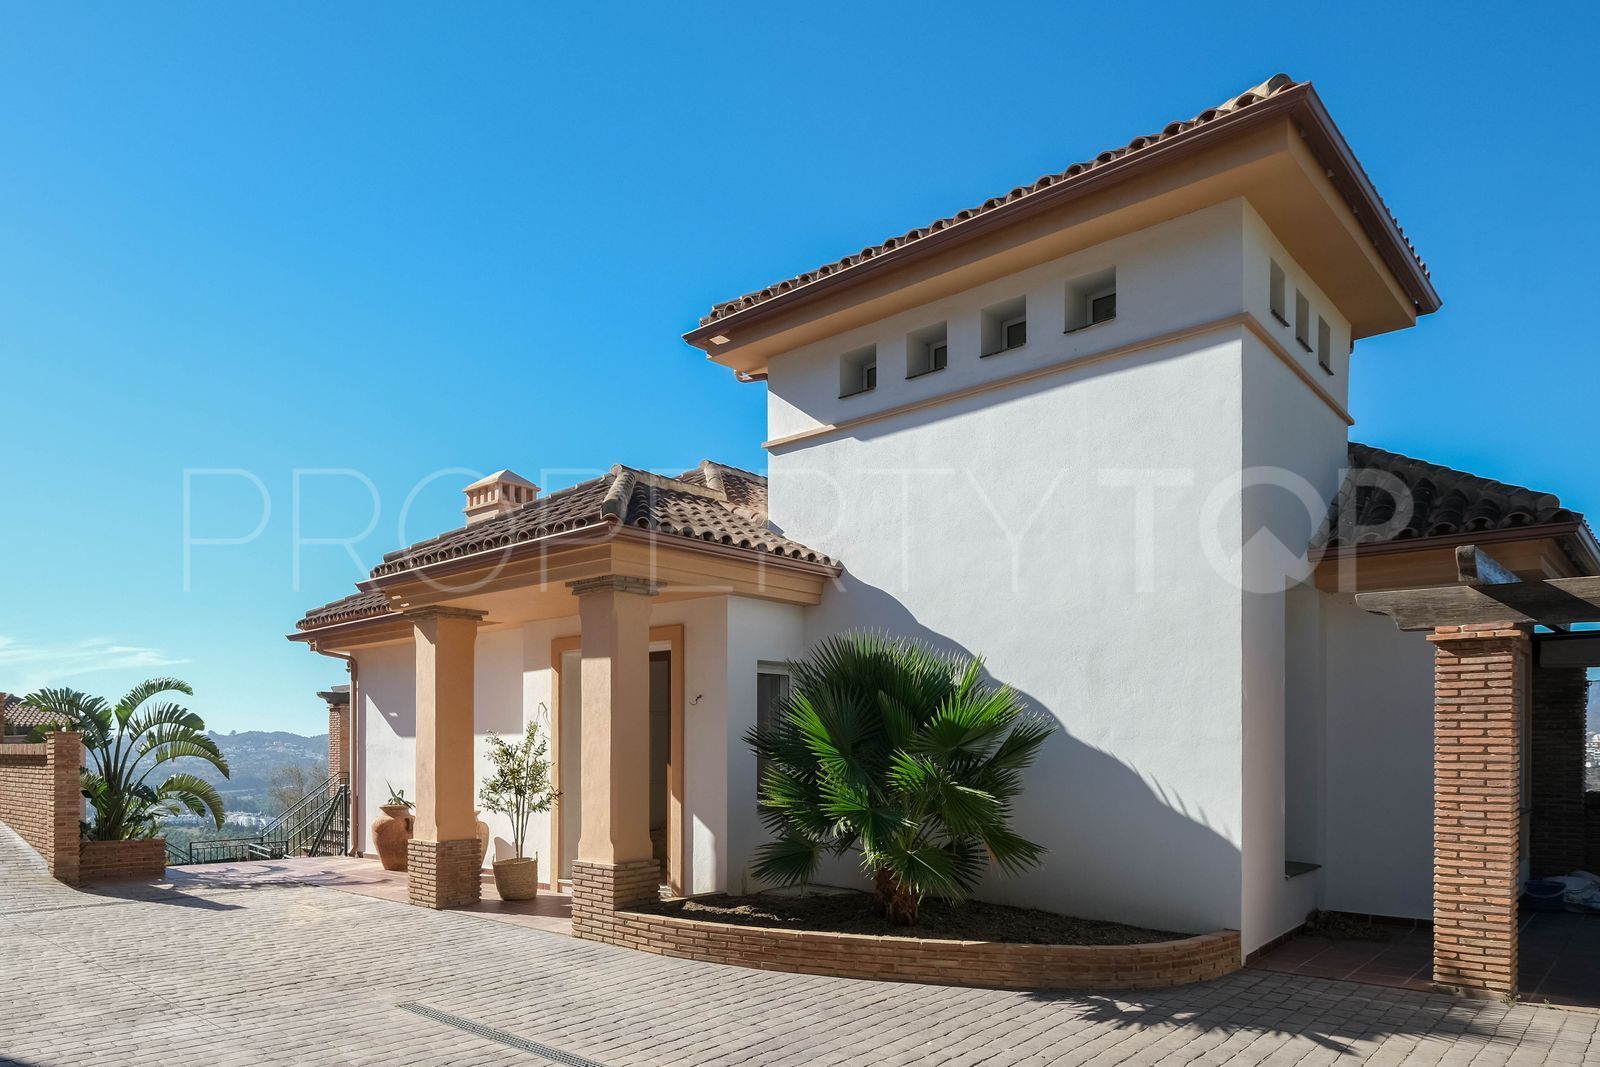 For sale villa with 4 bedrooms in Sierrezuela